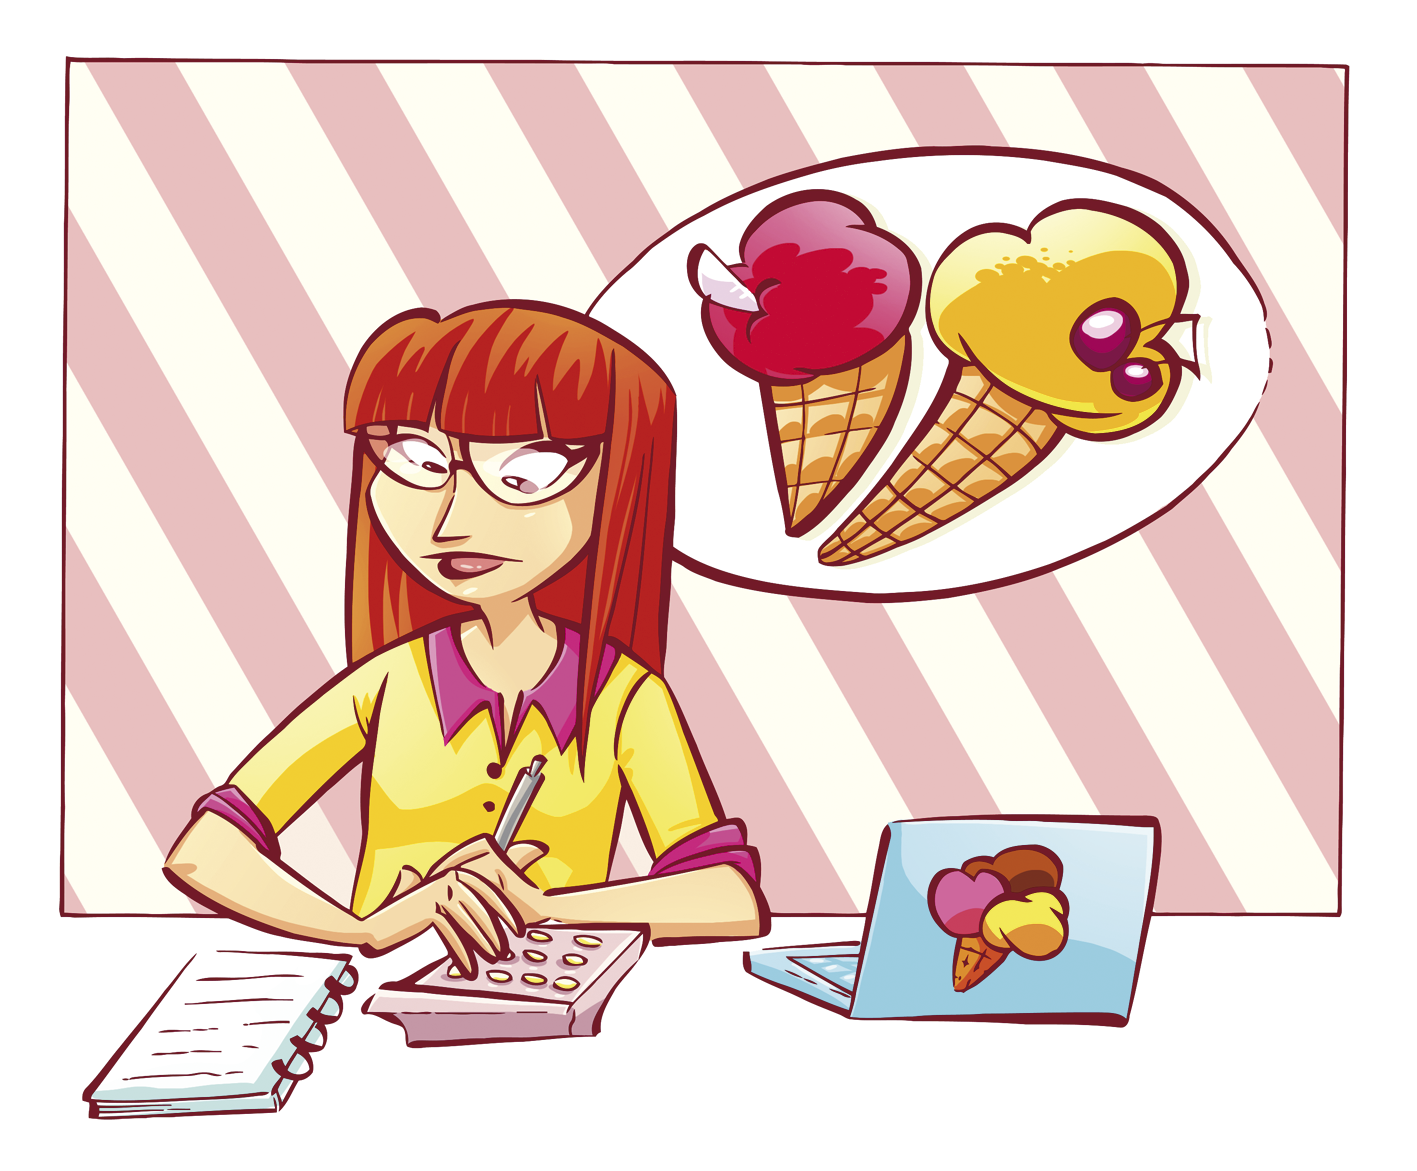 Ilustração. Uma mulher branca de cabelos ruivos, usando óculos e vestindo camisa amarela. Ela está sentada fazendo anotações em um caderno. Na mesa há um caderno, uma calculadora e um notebook. Ao fundo, há dois sorvetes de casquinha desenhados na parede.